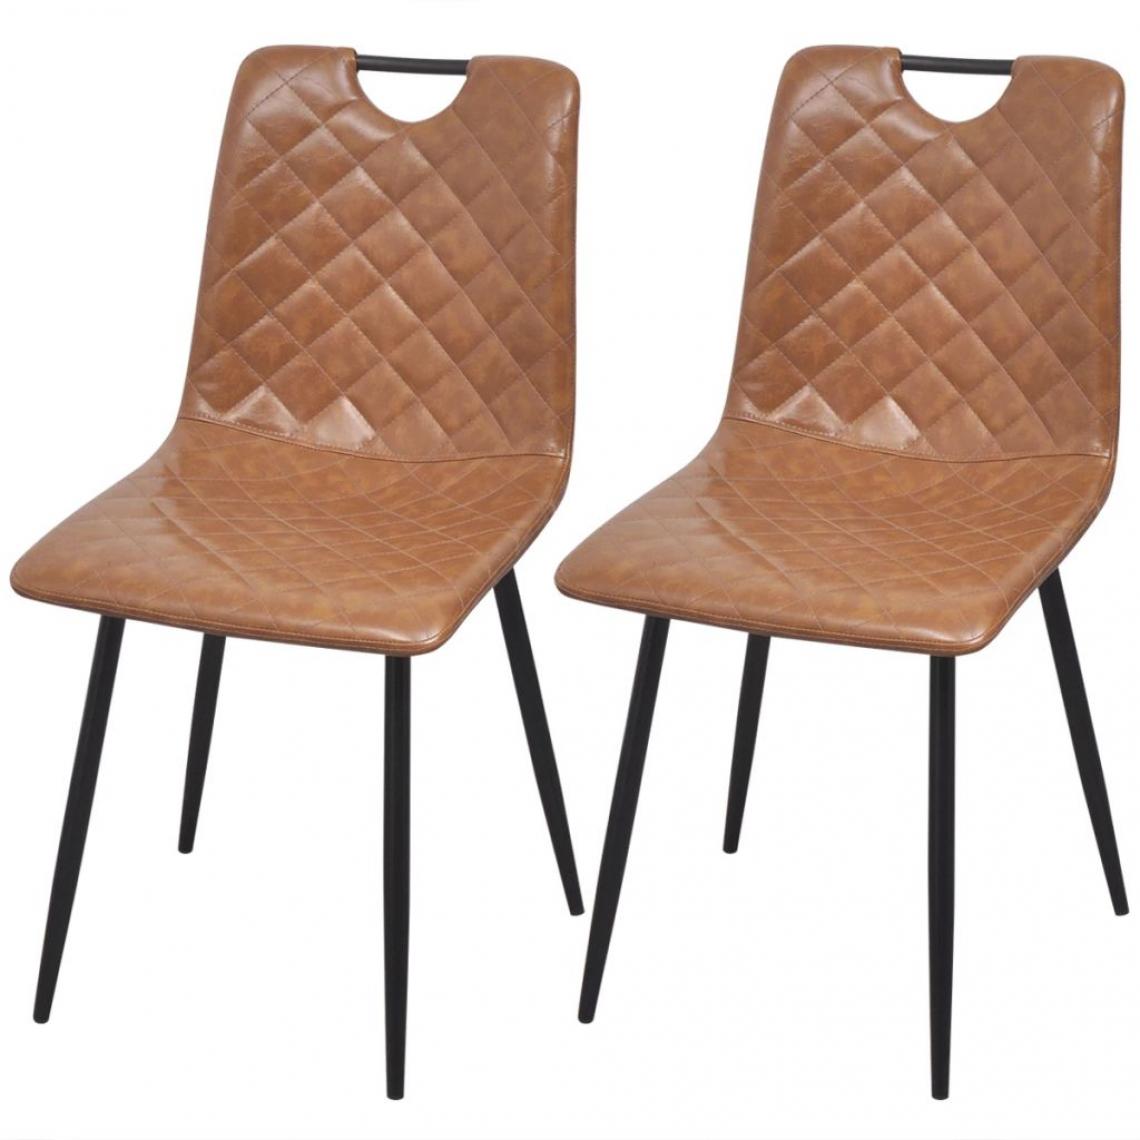 Decoshop26 - Lot de 2 chaises de salle à manger cuisine style rétro similicuir marron clair CDS020675 - Chaises